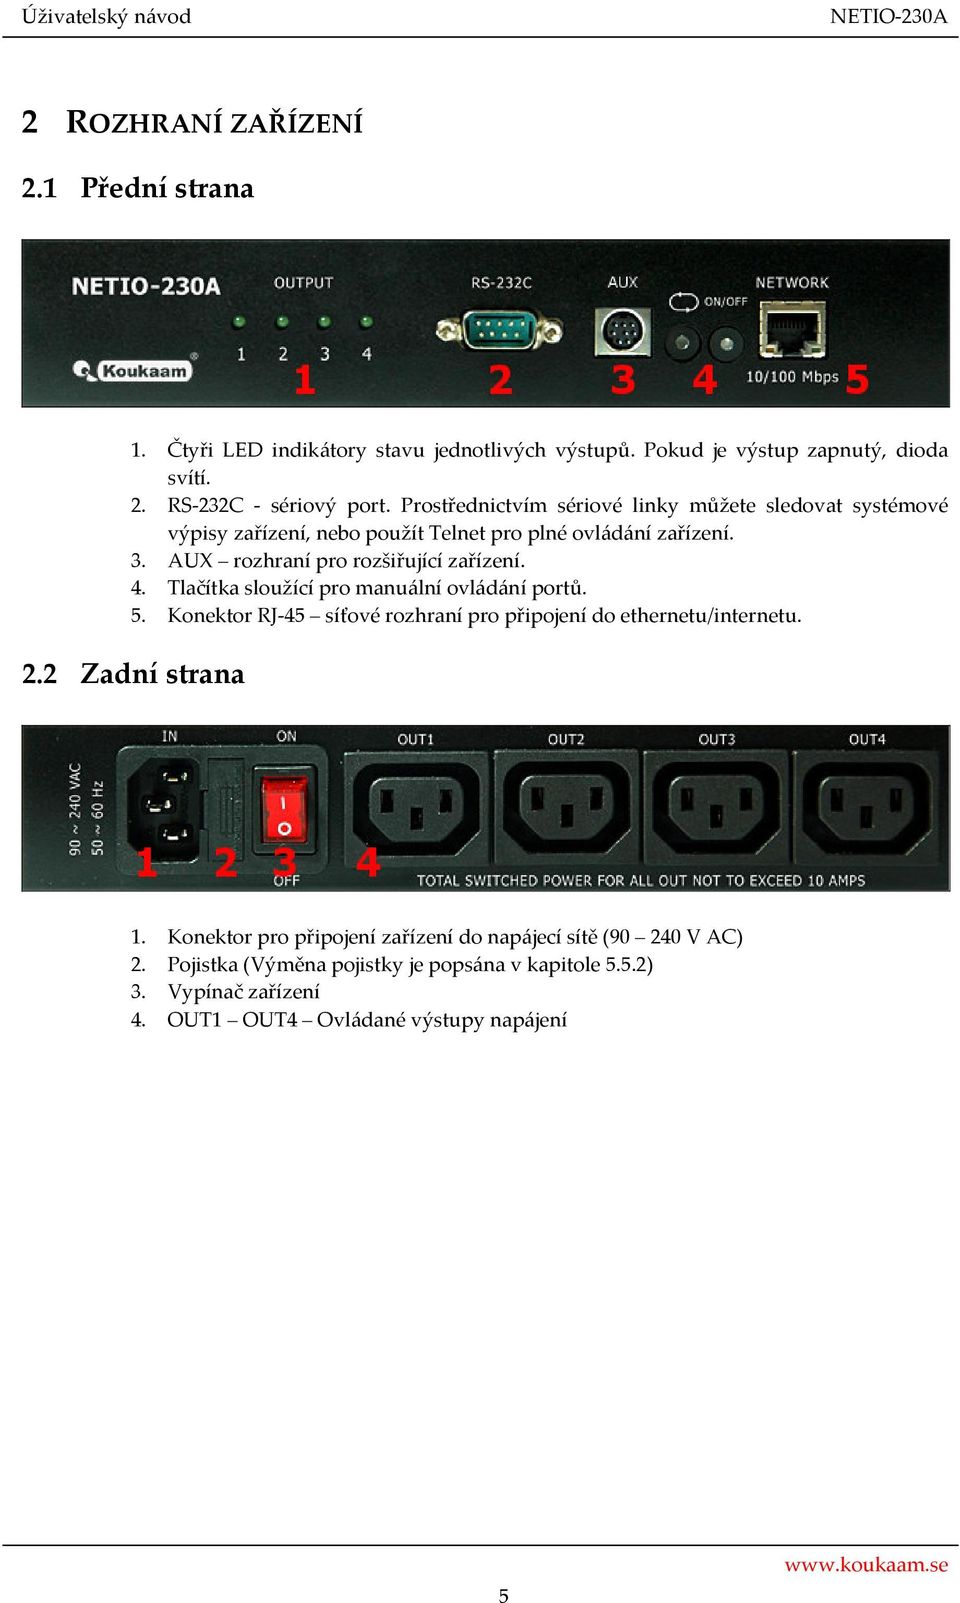 AUX rozhraní pro rozšiřující zařízení. 4. Tlačítka sloužící pro manuální ovládání portů. 5. Konektor RJ-45 síťové rozhraní pro připojení do ethernetu/internetu.